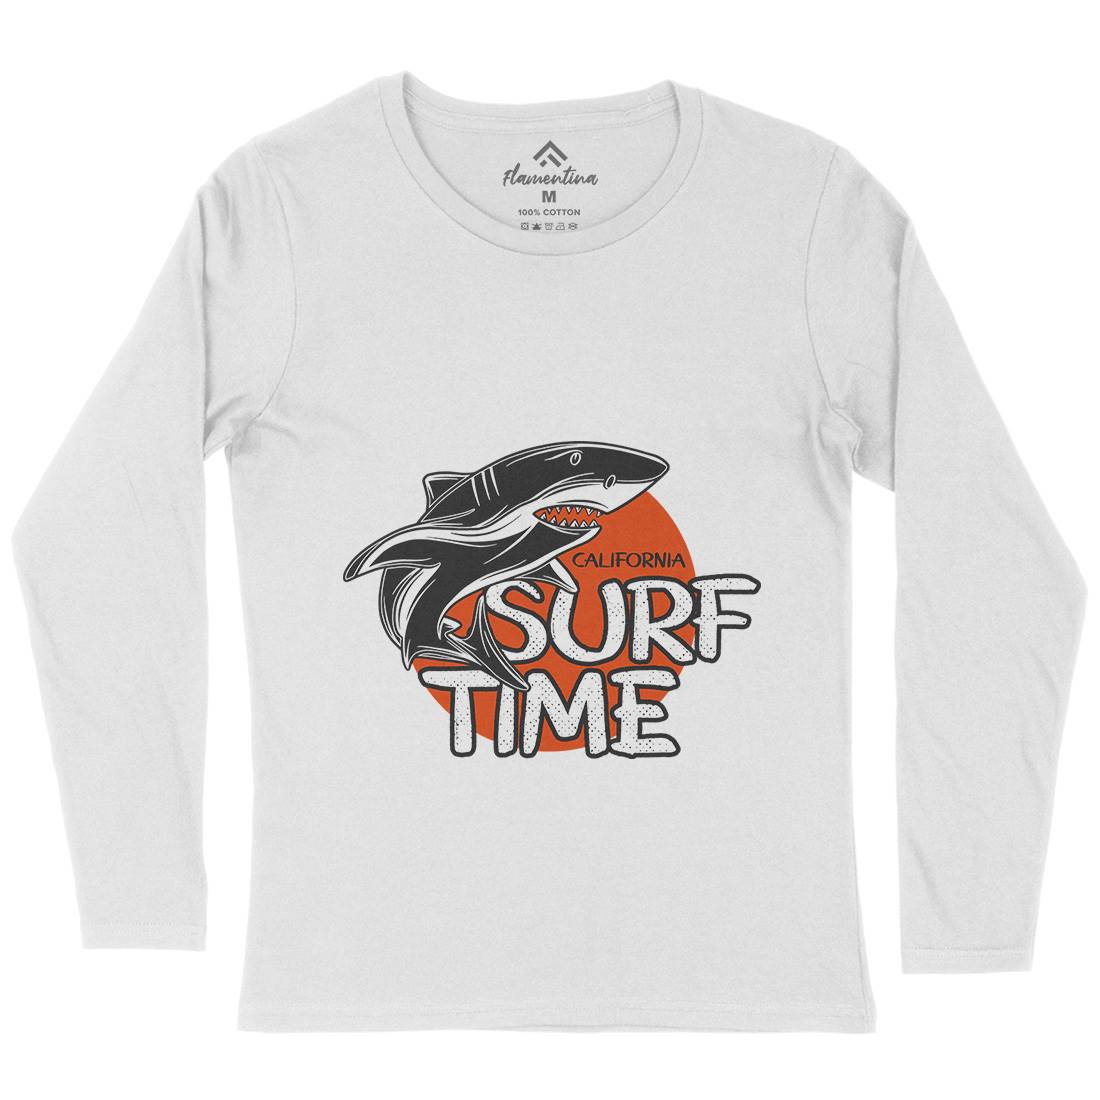 Shark Time Womens Long Sleeve T-Shirt Navy D969